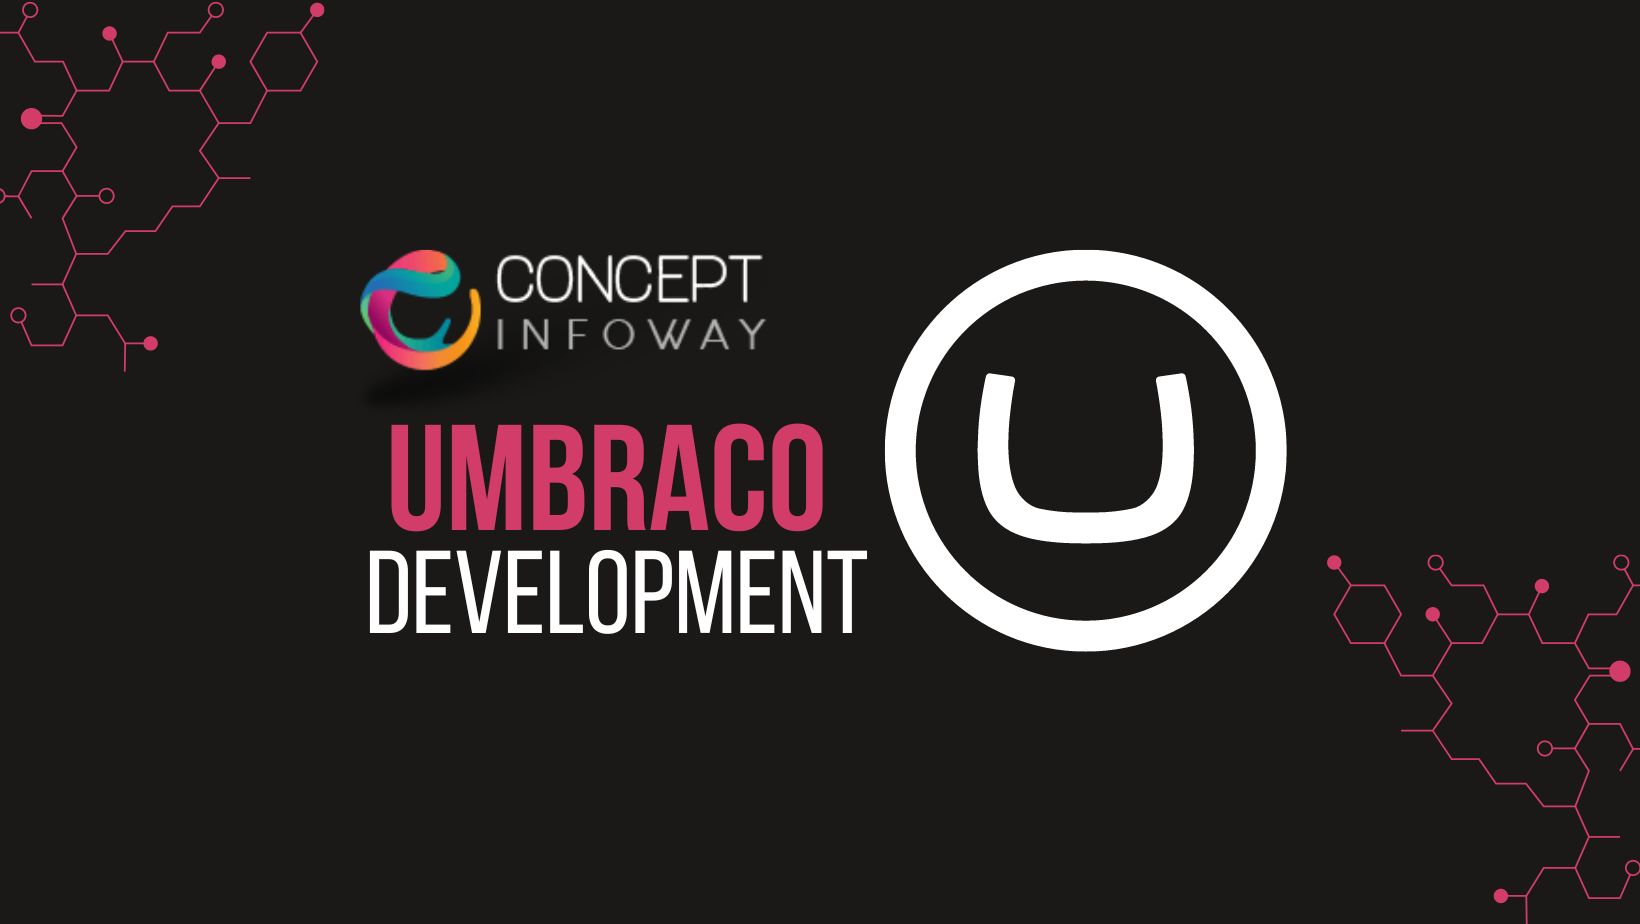 Umbraco Development - Concept Infoway